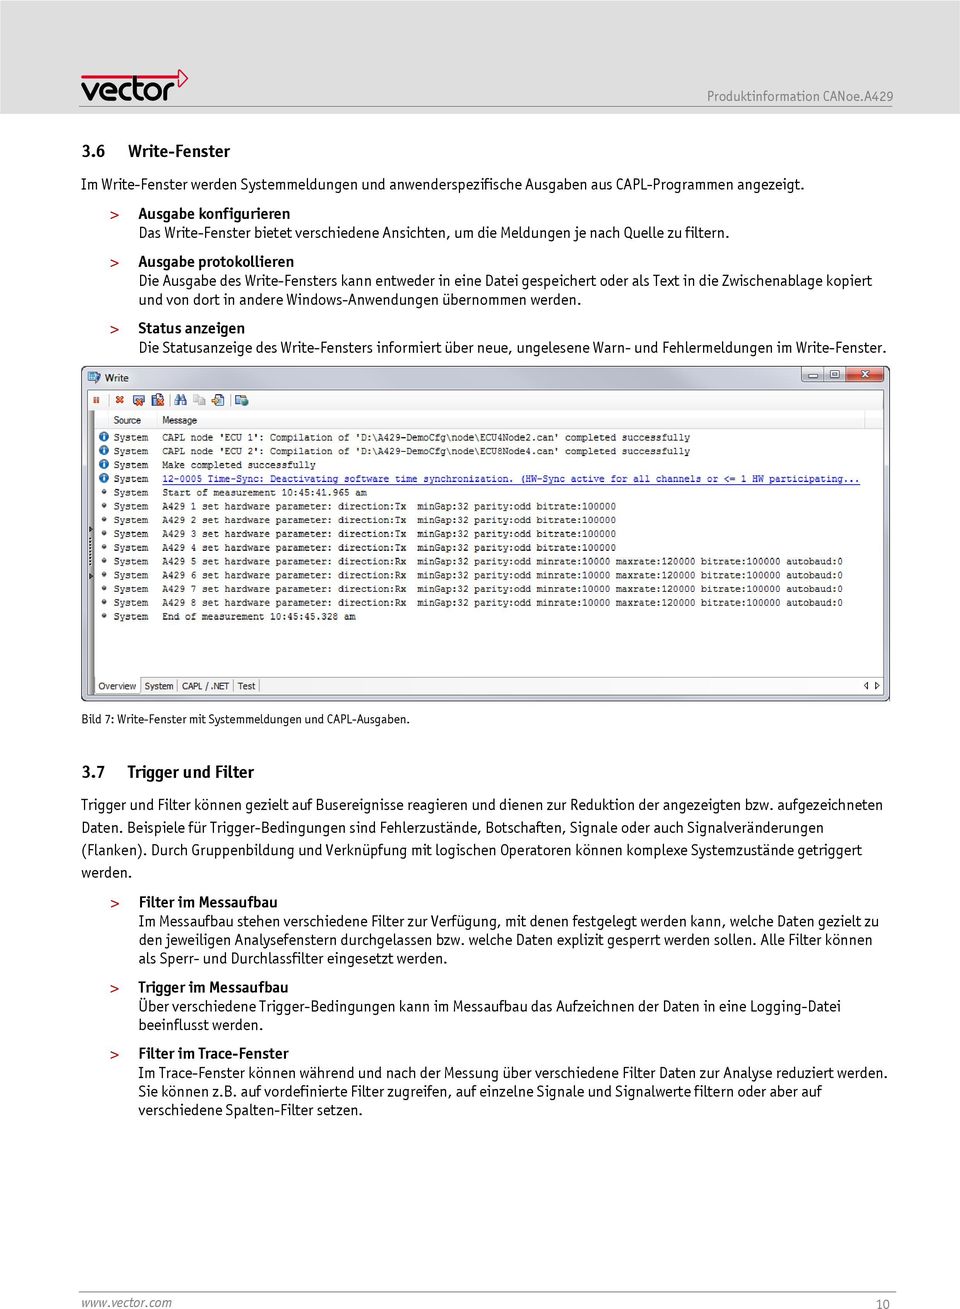 > Ausgabe protokollieren Die Ausgabe des Write-Fensters kann entweder in eine Datei gespeichert oder als Text in die Zwischenablage kopiert und von dort in andere Windows-Anwendungen übernommen